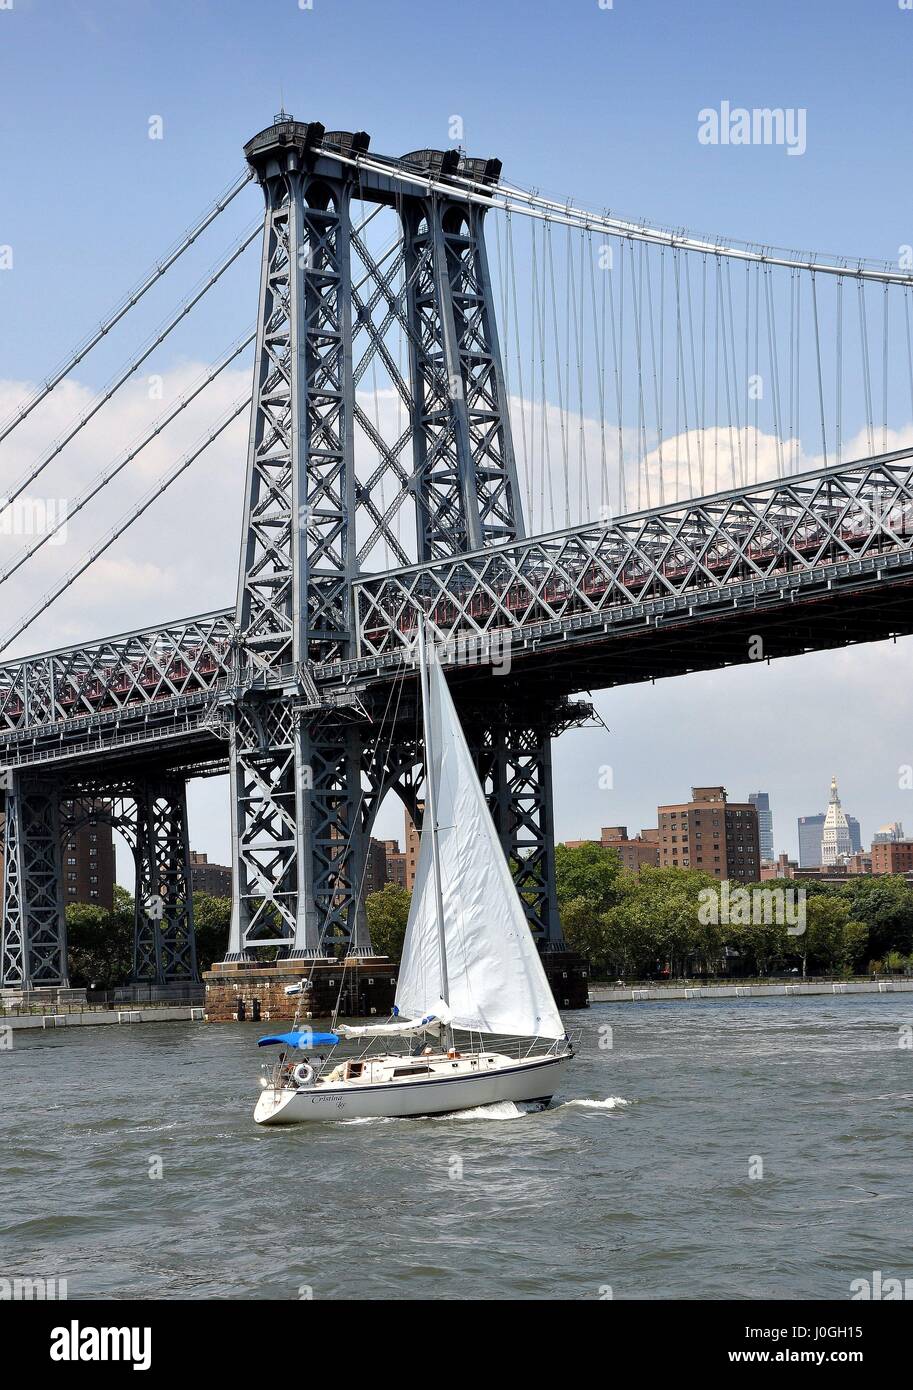 New York City - 4. August 2011: Segelboot & die Williamsburg Bridge über den East River, die Manhattan Insel mit dem Borough of Brooklyn verbindet Stockfoto